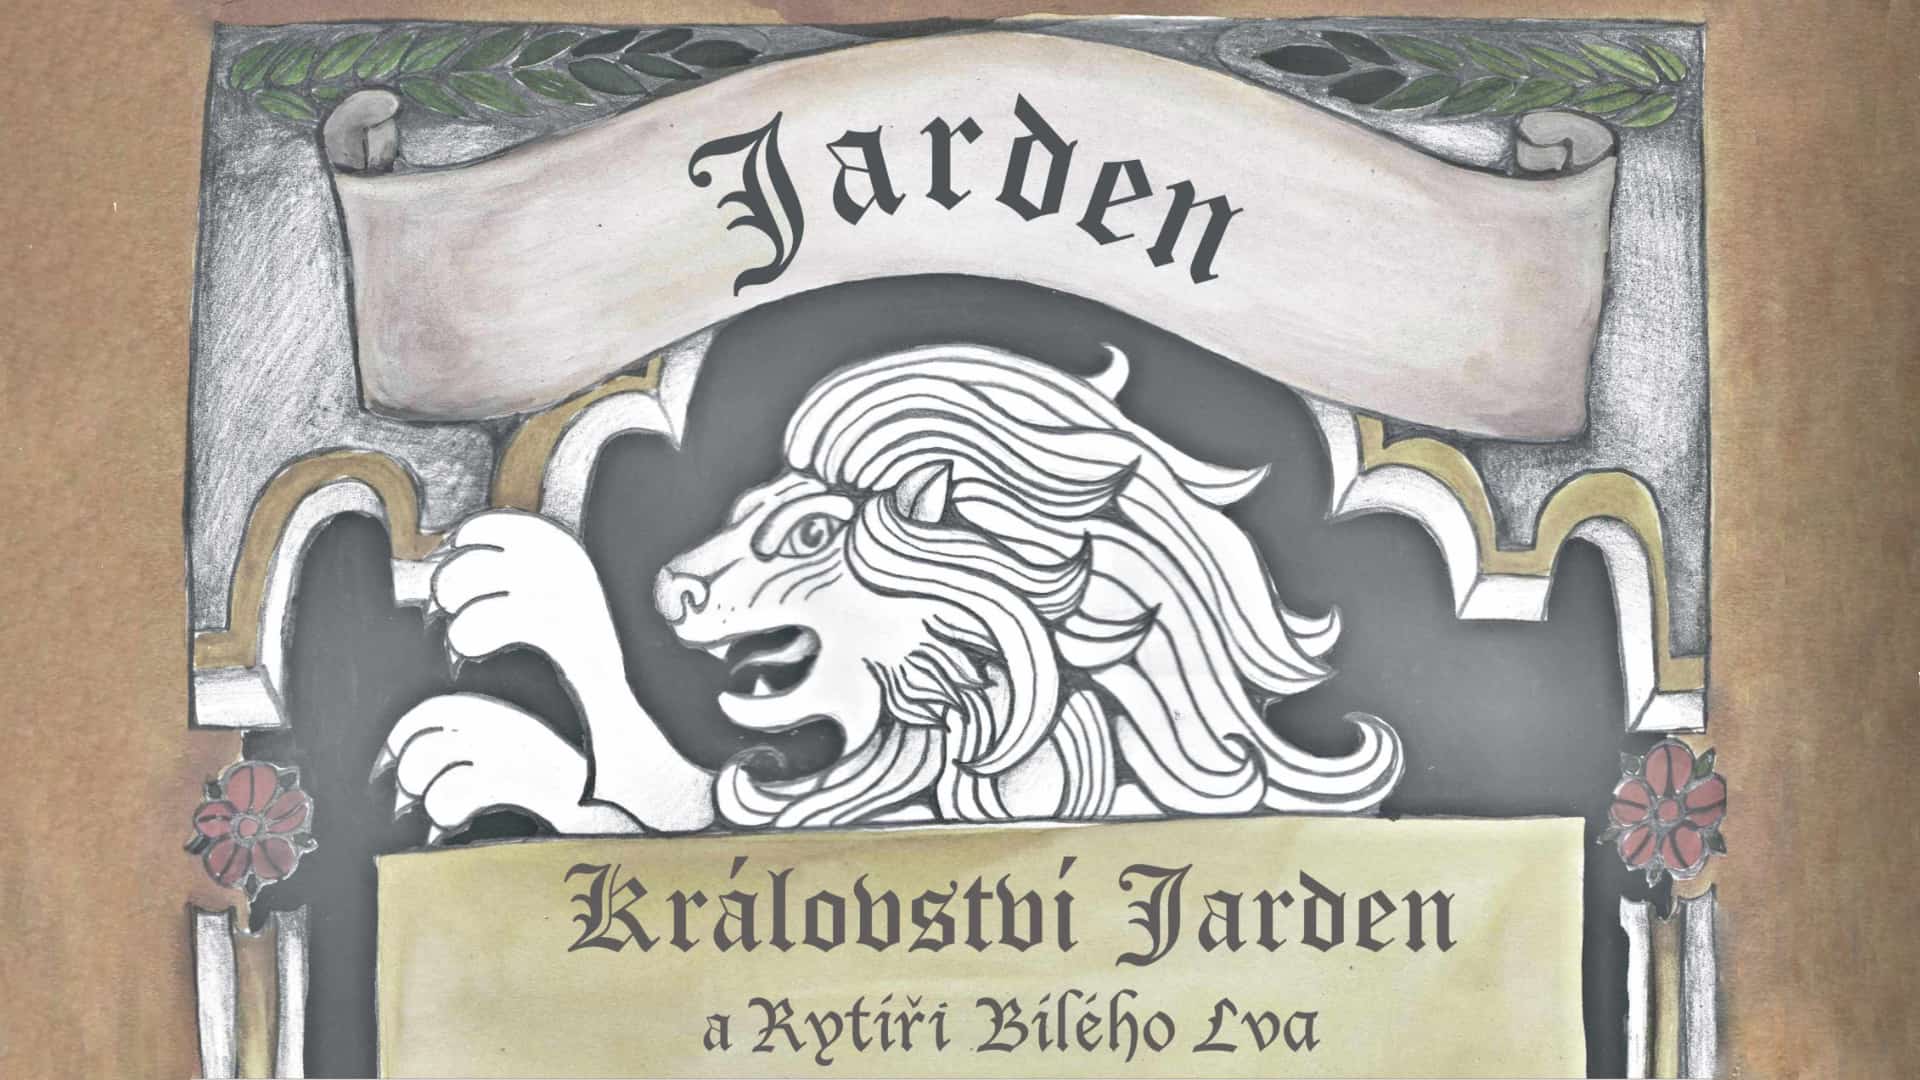 Království Jarden a rytíři Bílého lva 5